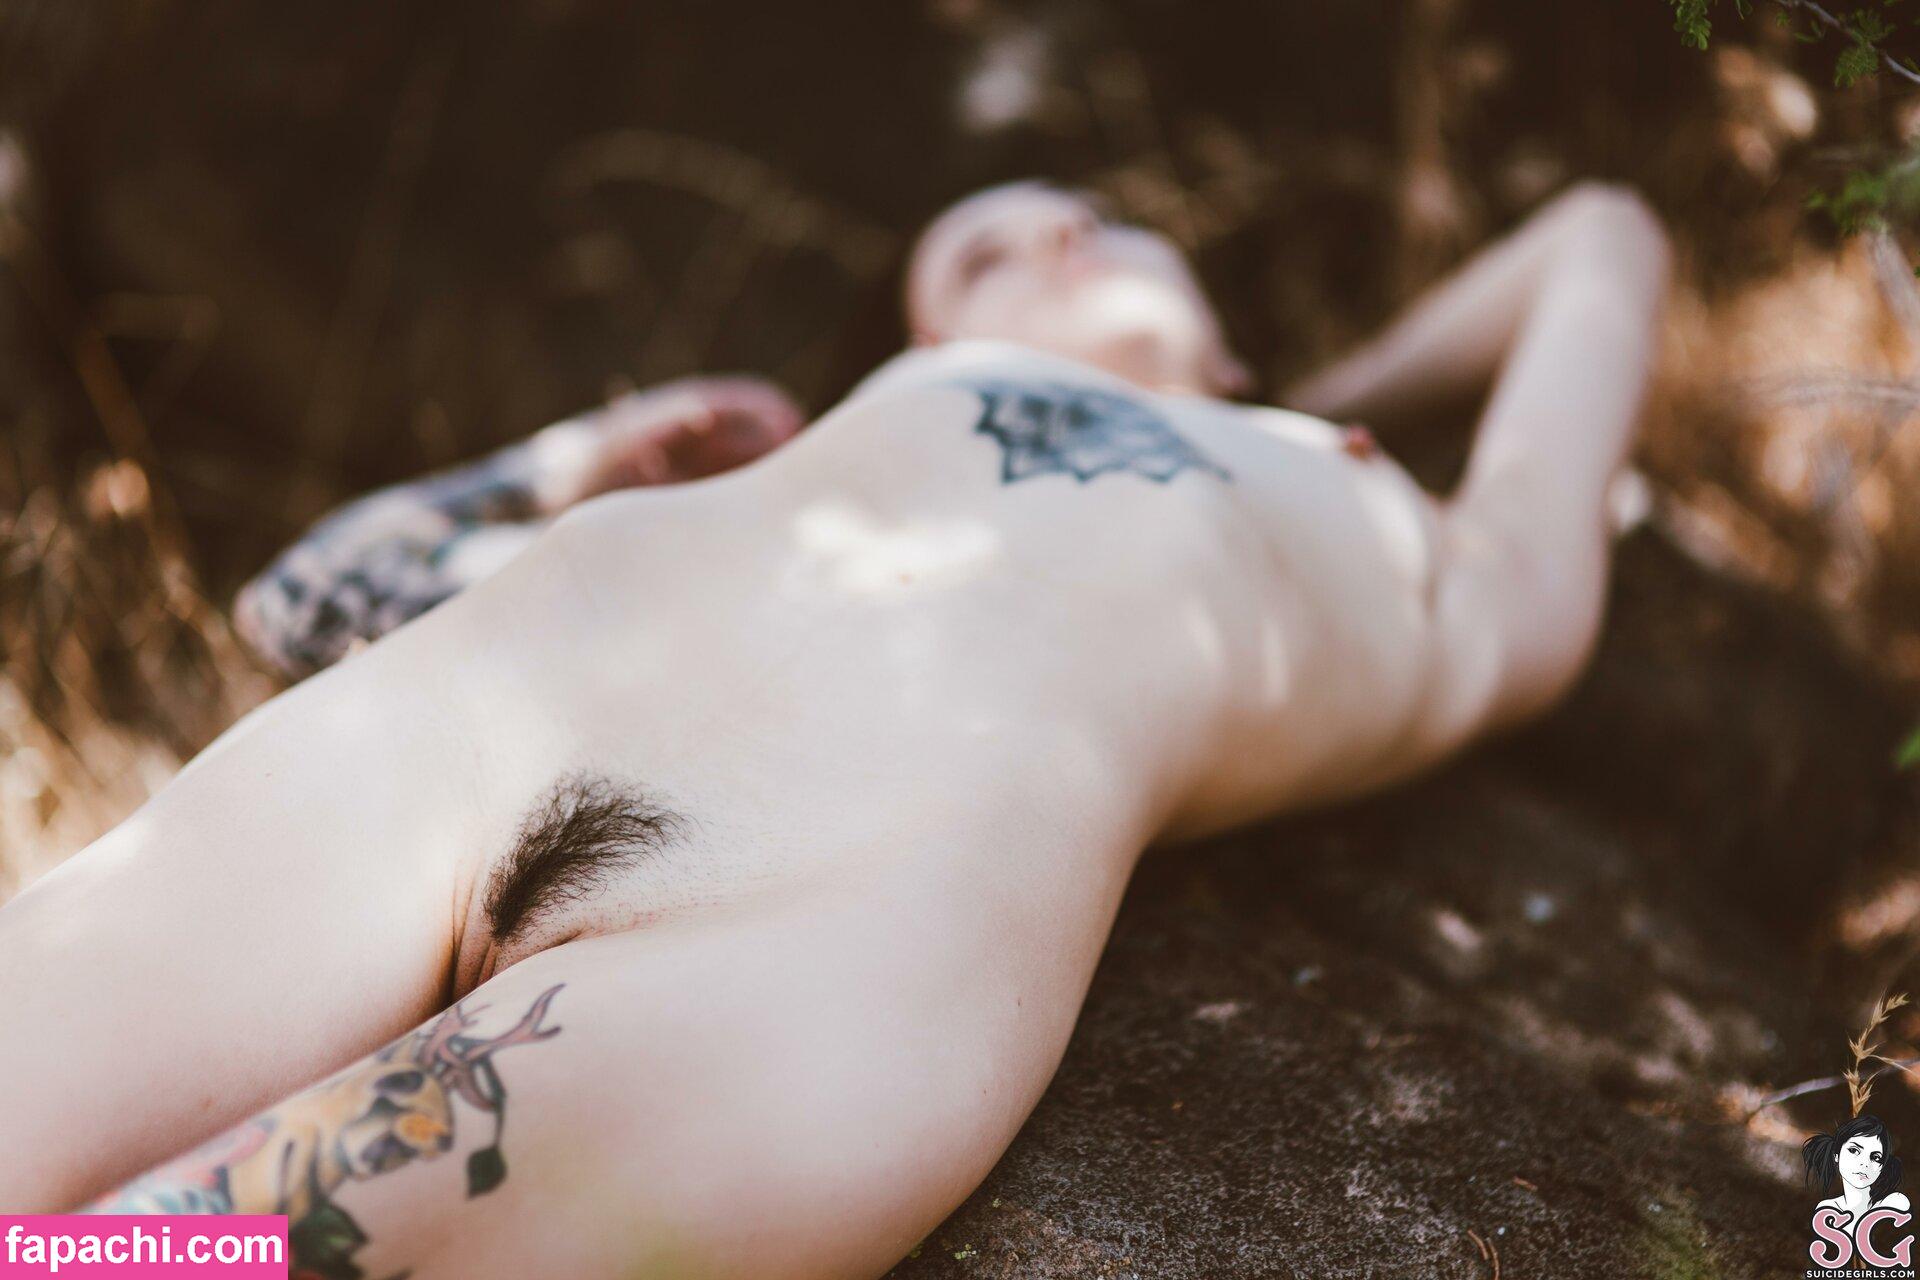 Feryn Suicide / ferynandwolfe / ferynsuicide leaked nude photo #0405 from OnlyFans/Patreon